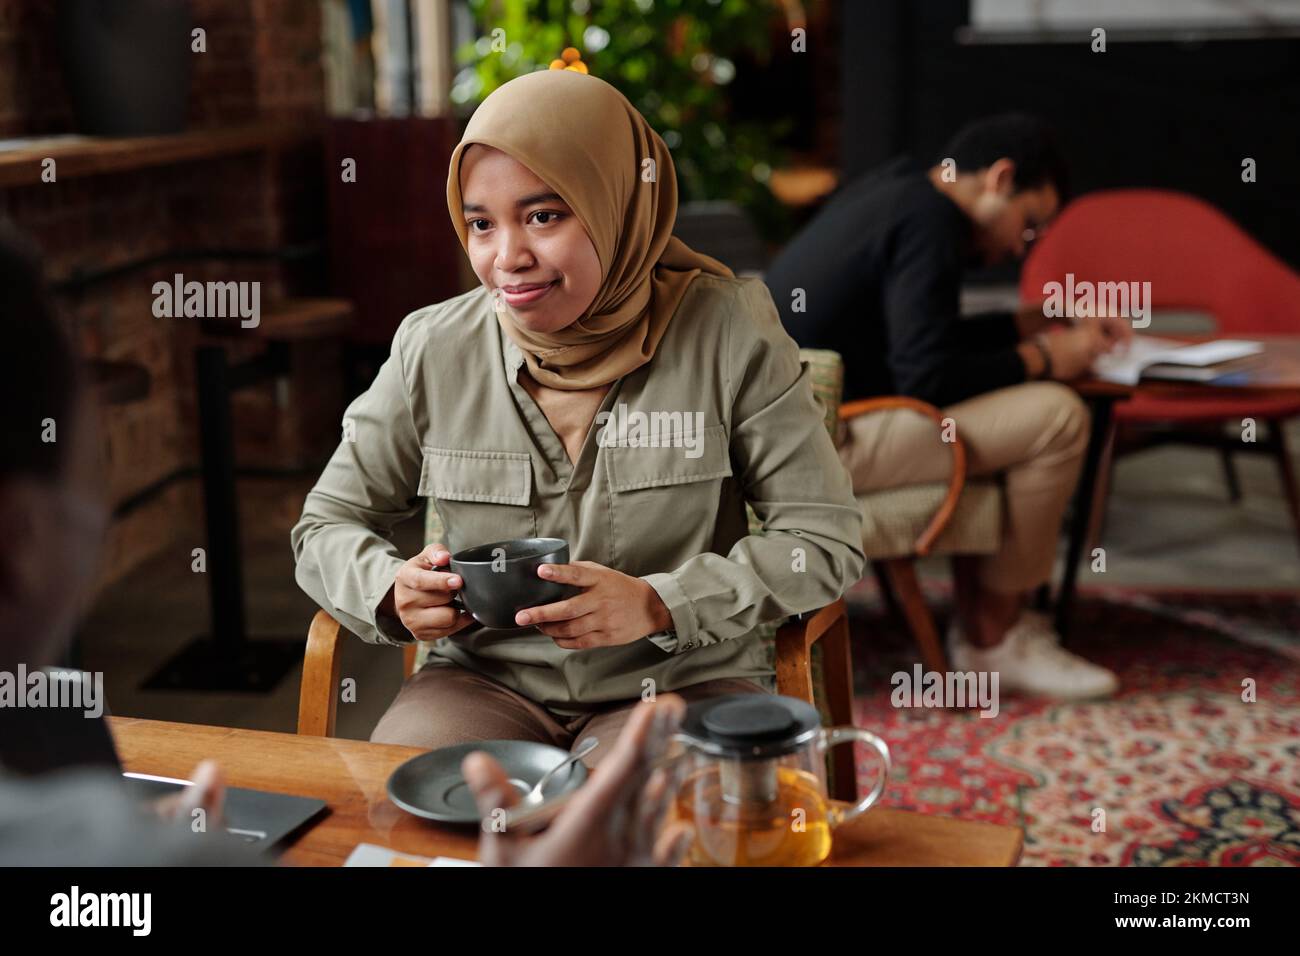 Junge muslimische Mitarbeiterin im Hidschab hält eine Tasse Kräutertee, während sie während des Gesprächs vor einem männlichen Kollegen am Tisch sitzt Stockfoto